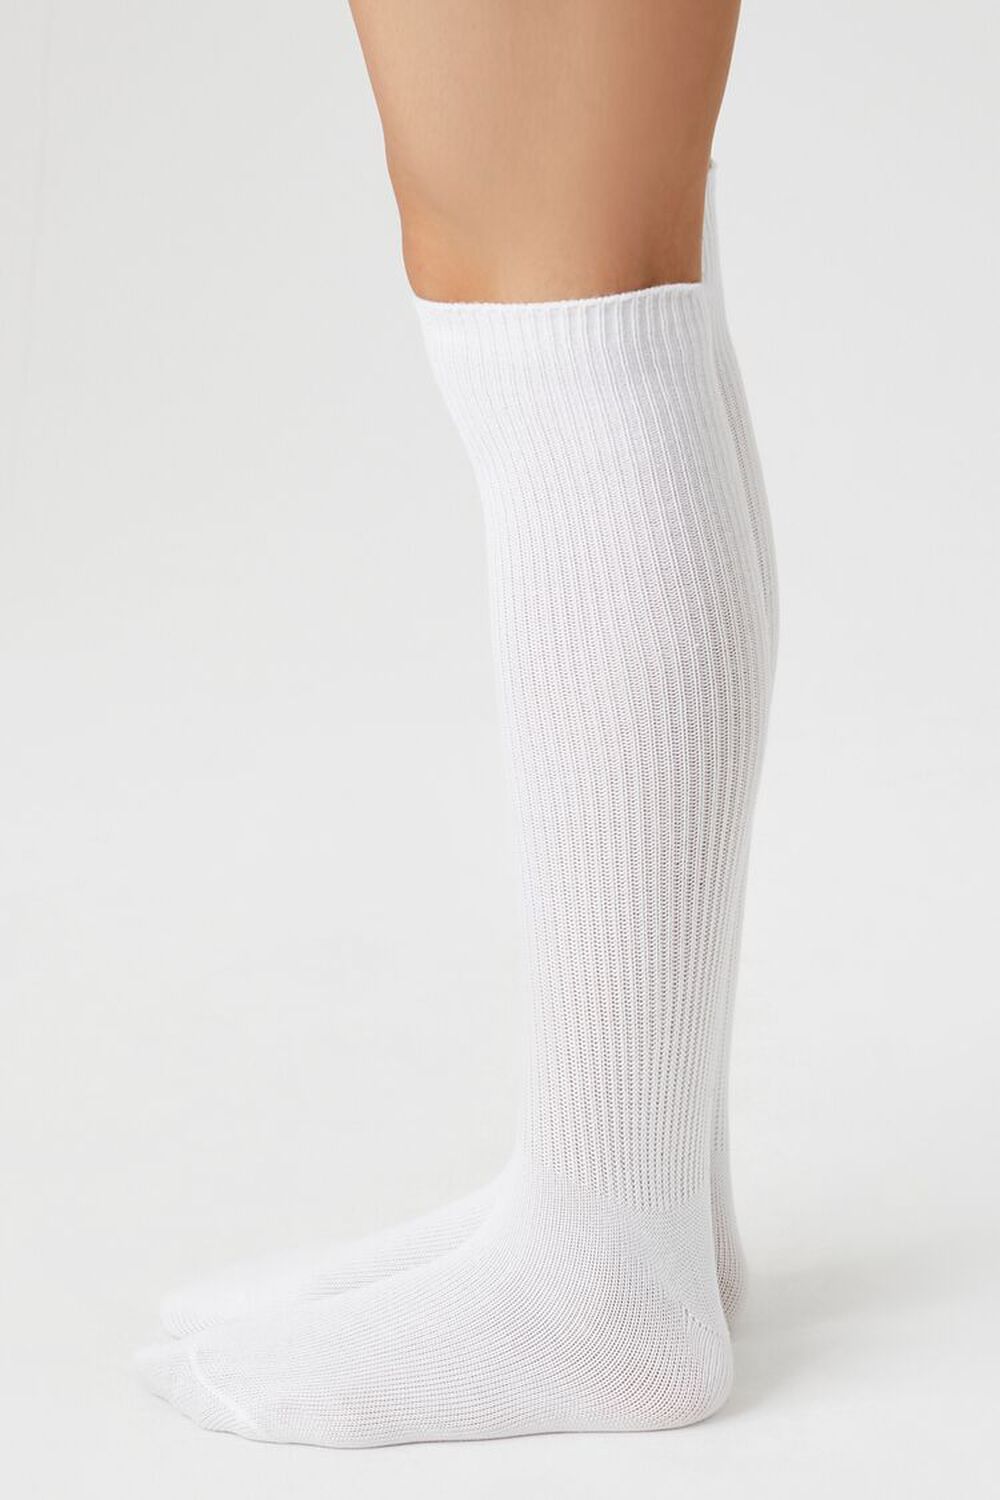 Over-the-Knee Socks